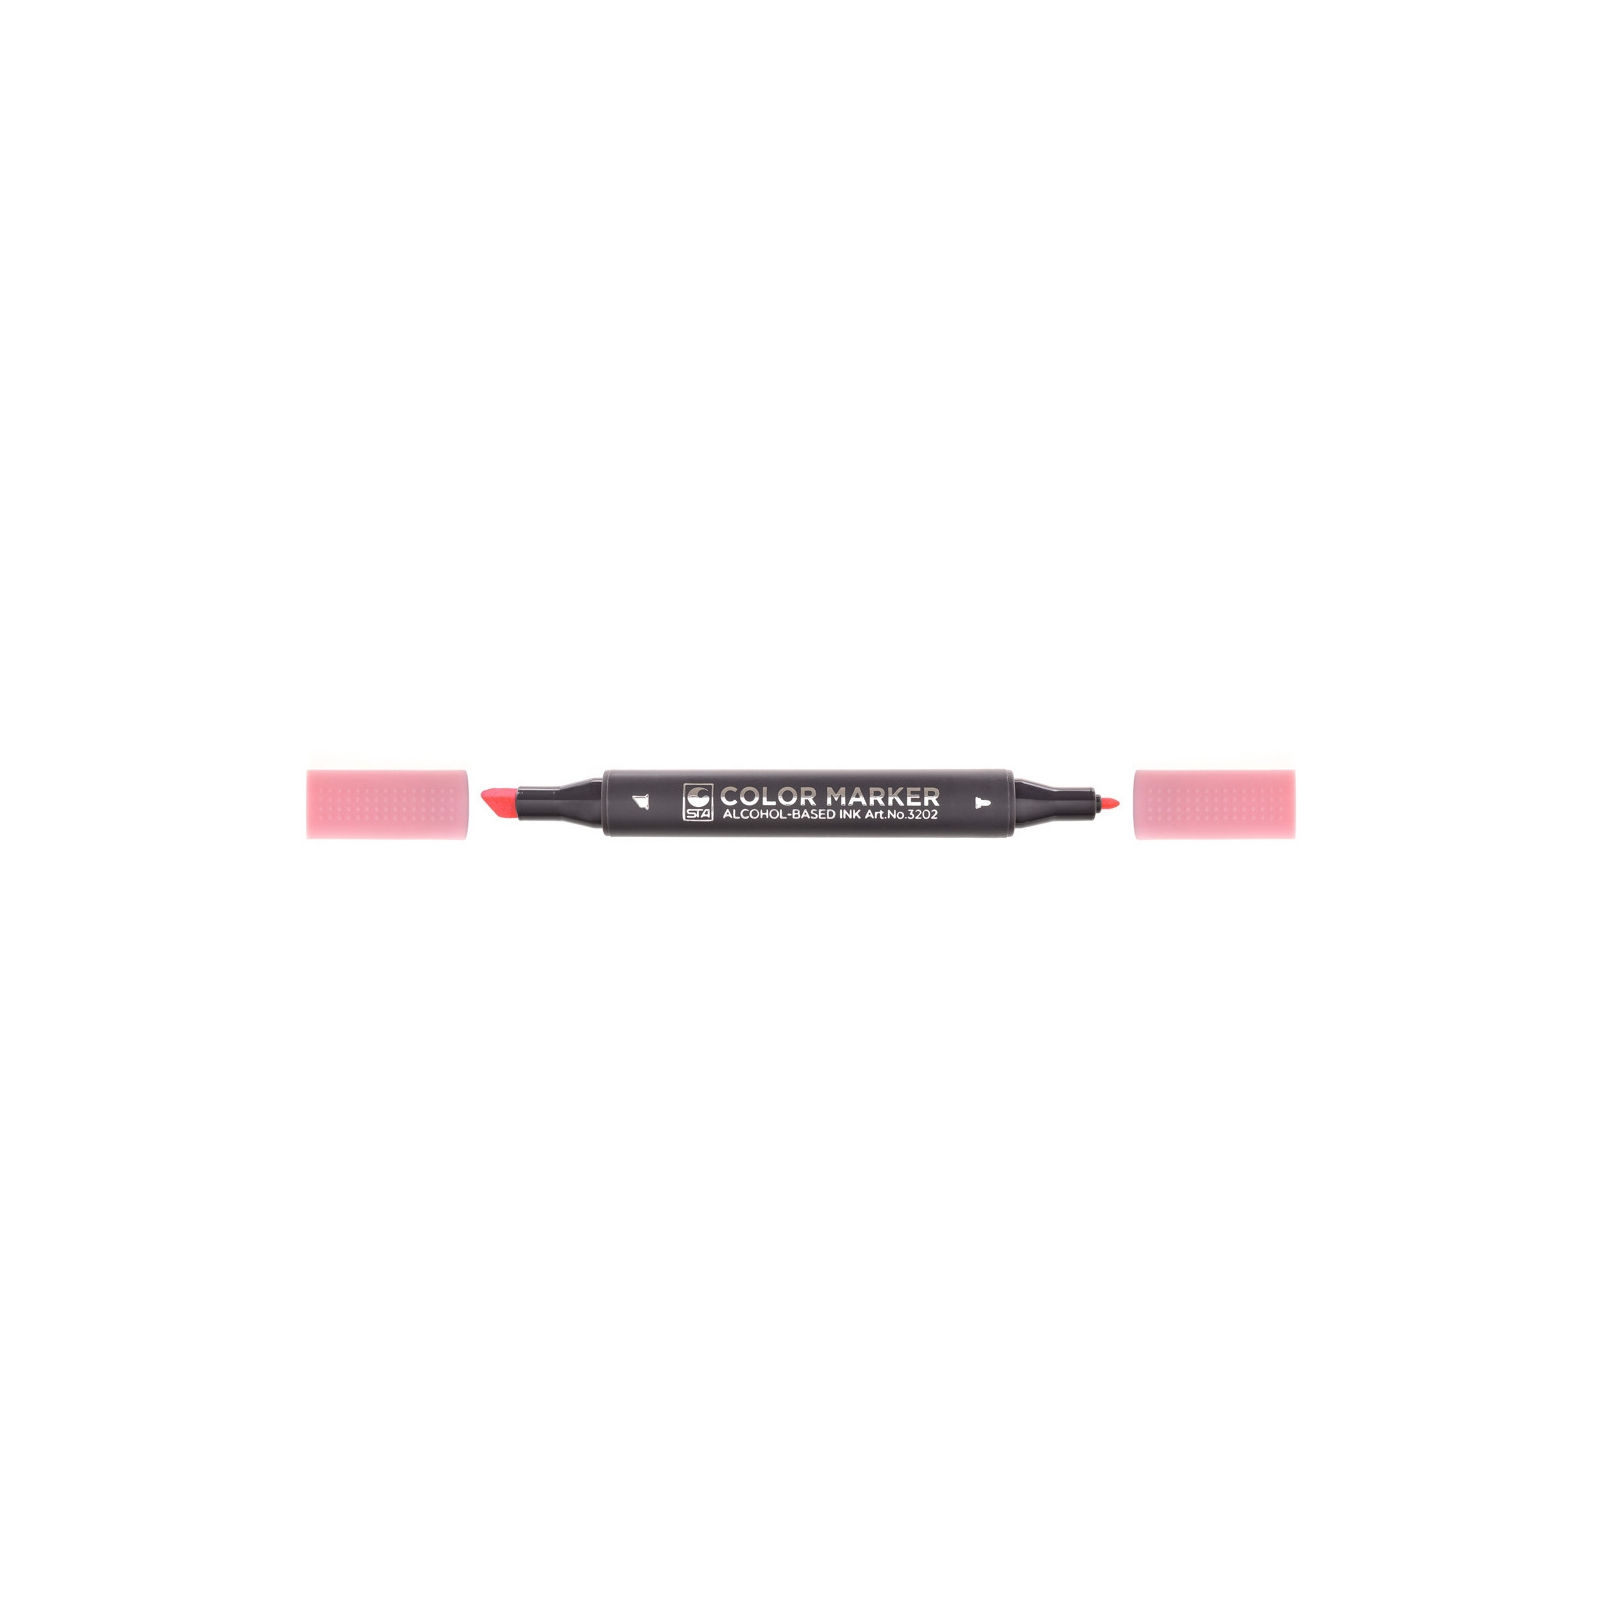 Художественный маркер STA двусторонний для эскизов, бледно-розовый (STA3202-9)